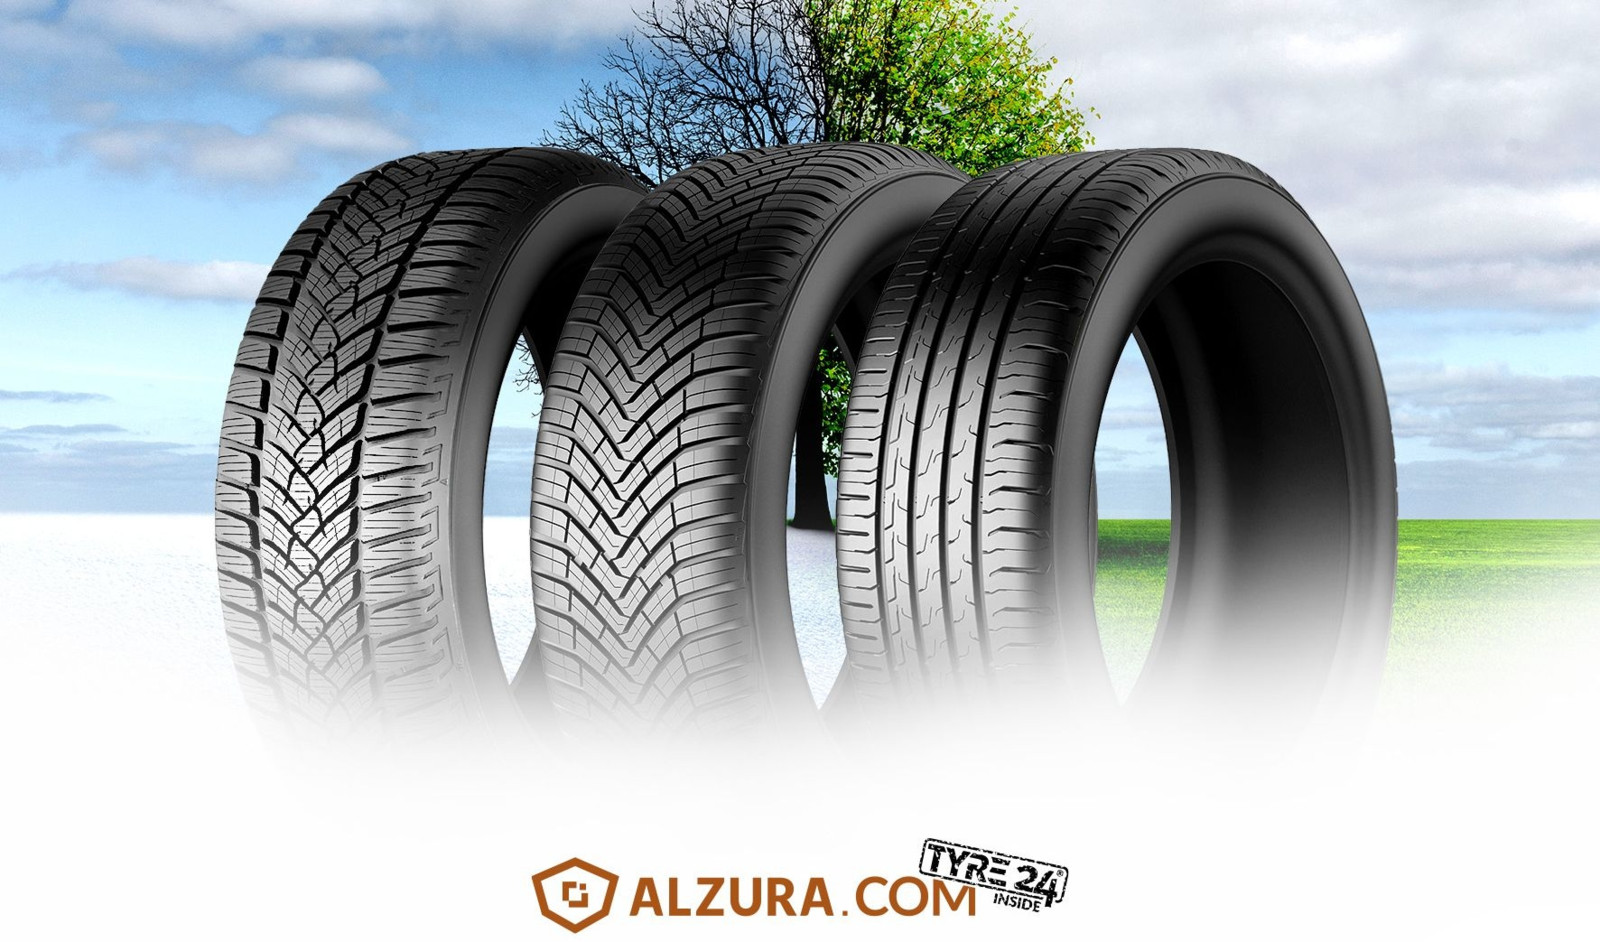 Die B2B-Plattform Alzura Tyre24 zieht Bilanz zum Pkw-Reifenjahr 2022.